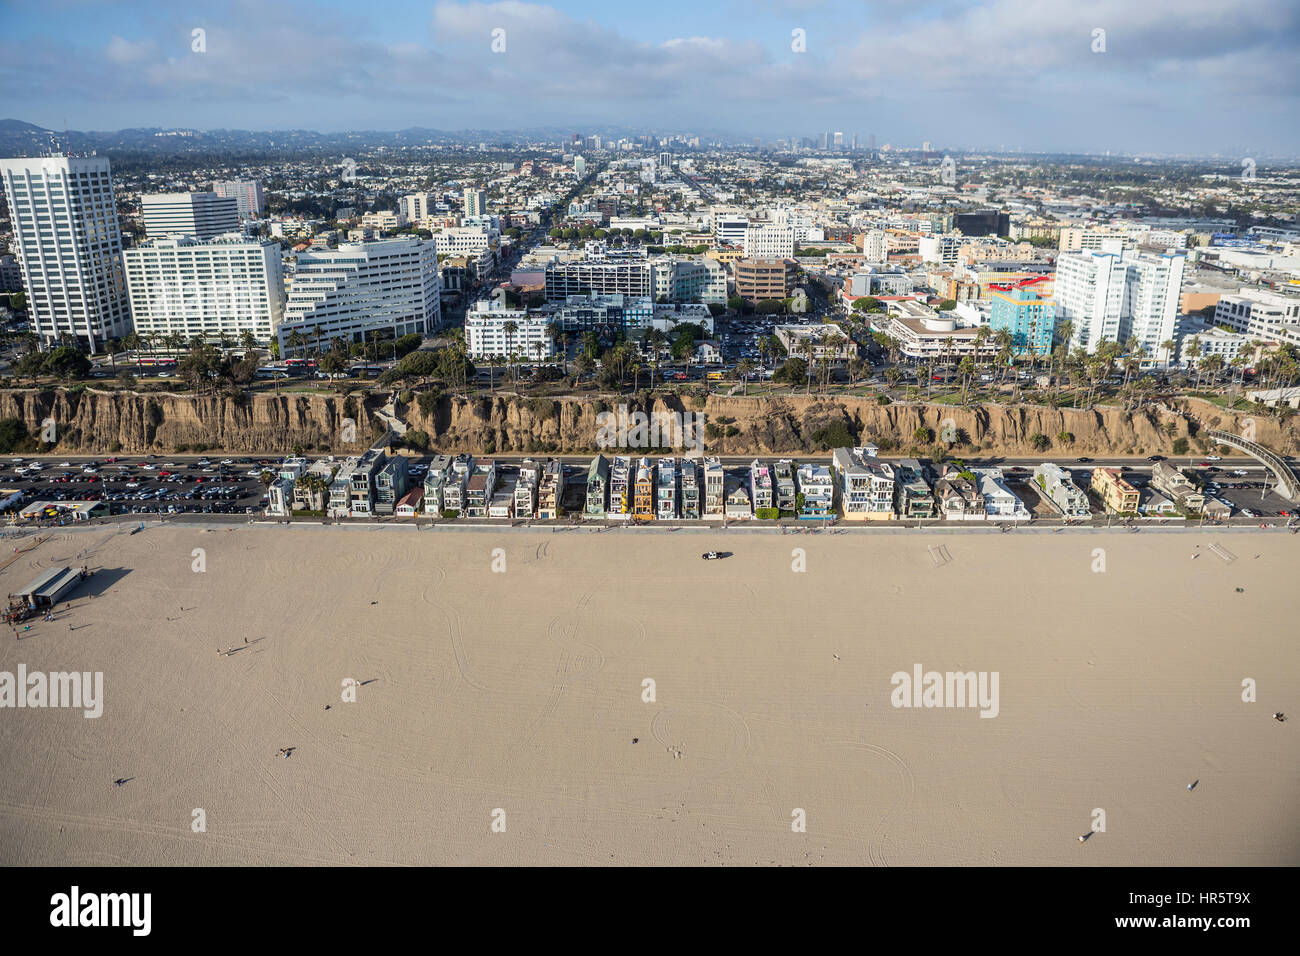 Santa Monica, Californie, USA - 6 août 2016 : Vue aérienne de la plage de Santa Monica, les maisons, et centre des affaires, près de Los Angeles. Banque D'Images